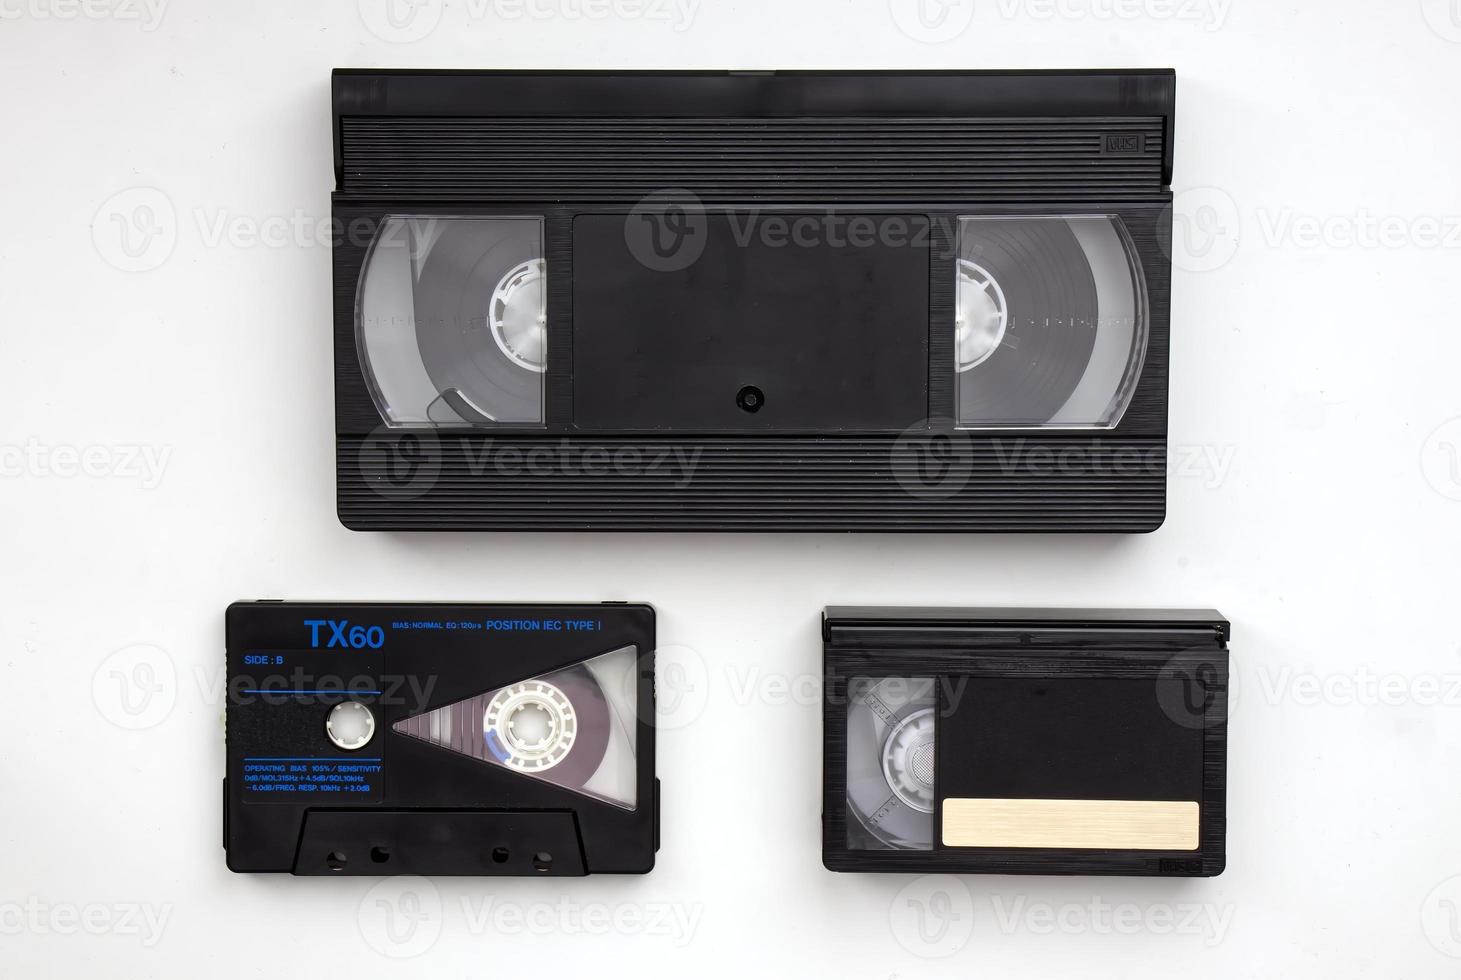 fitas cassete de armazenamento de mídia vintage evolução vhs, fita cassete de áudio, vhs-c. tecnologia dos anos 90. foto